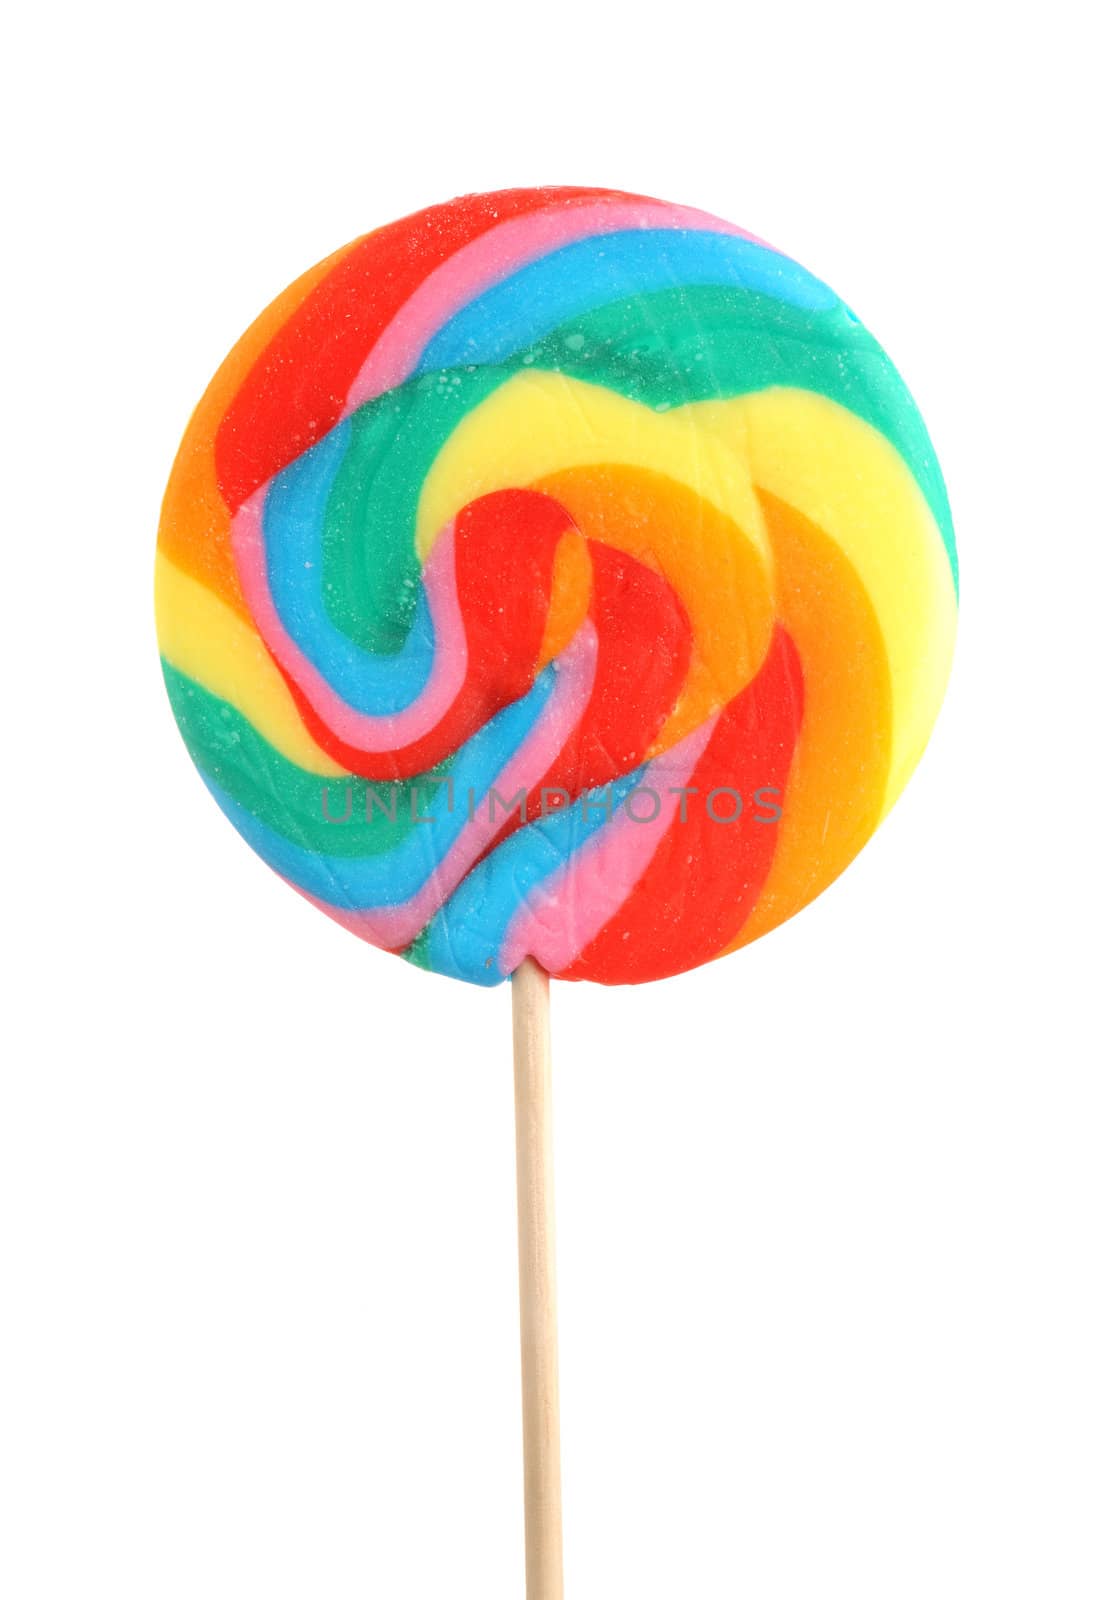  colorful lollipop by stokkete